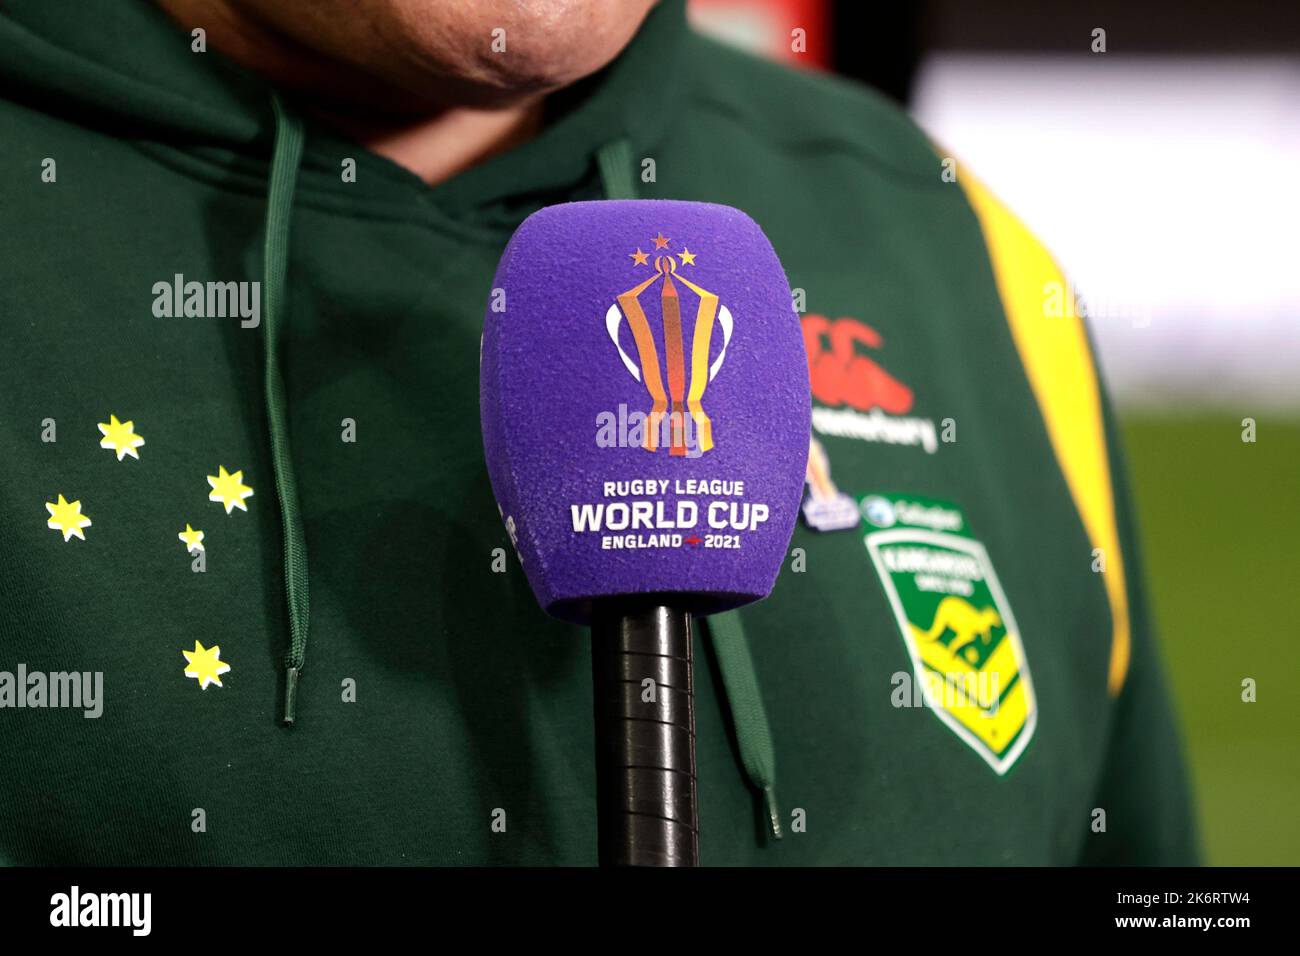 L'allenatore capo australiano Mal Meninga è stato intervistato prima della partita di Coppa del mondo di Rugby League di gruppo B all'Headingley Stadium, Leeds. Data immagine: Sabato 15 ottobre 2022. Foto Stock